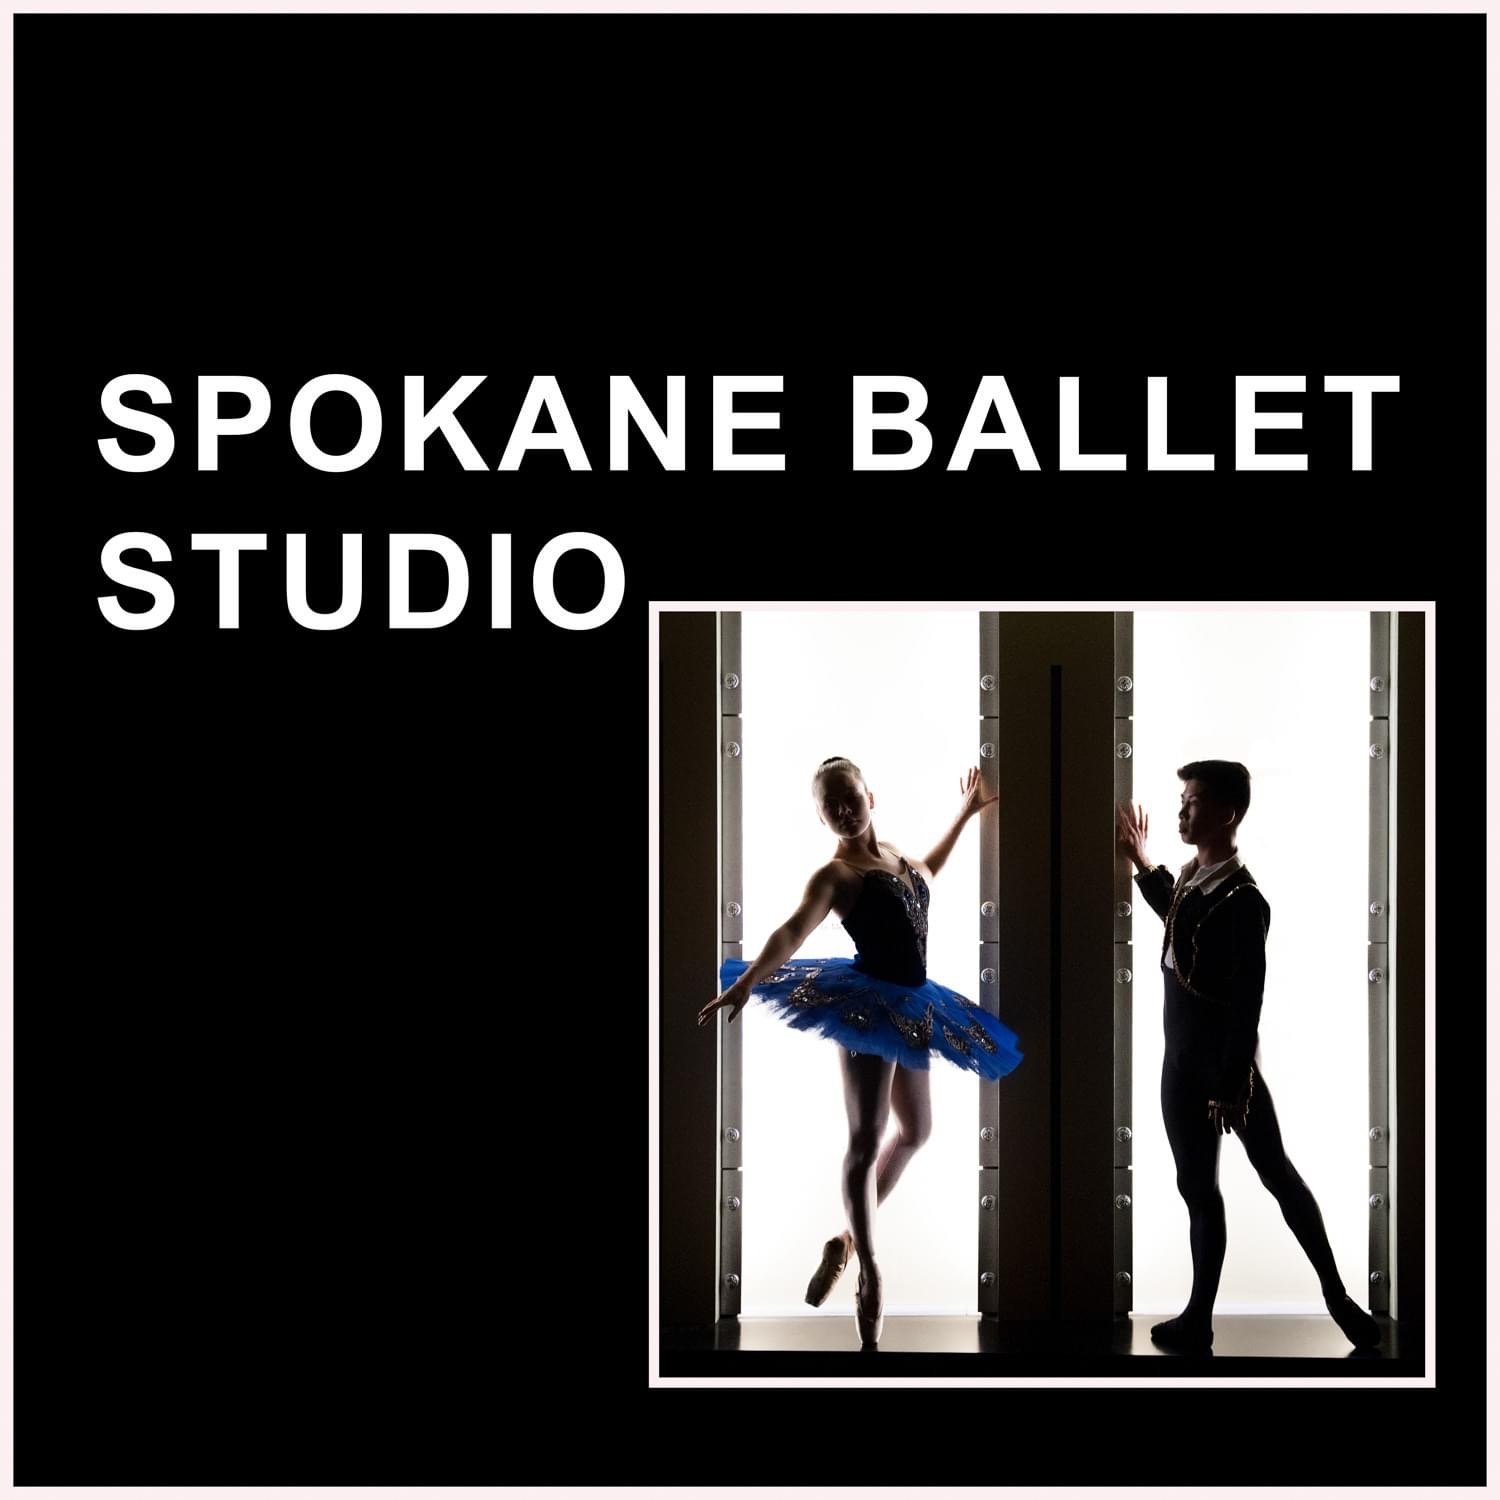 Spokane Ballet Studio